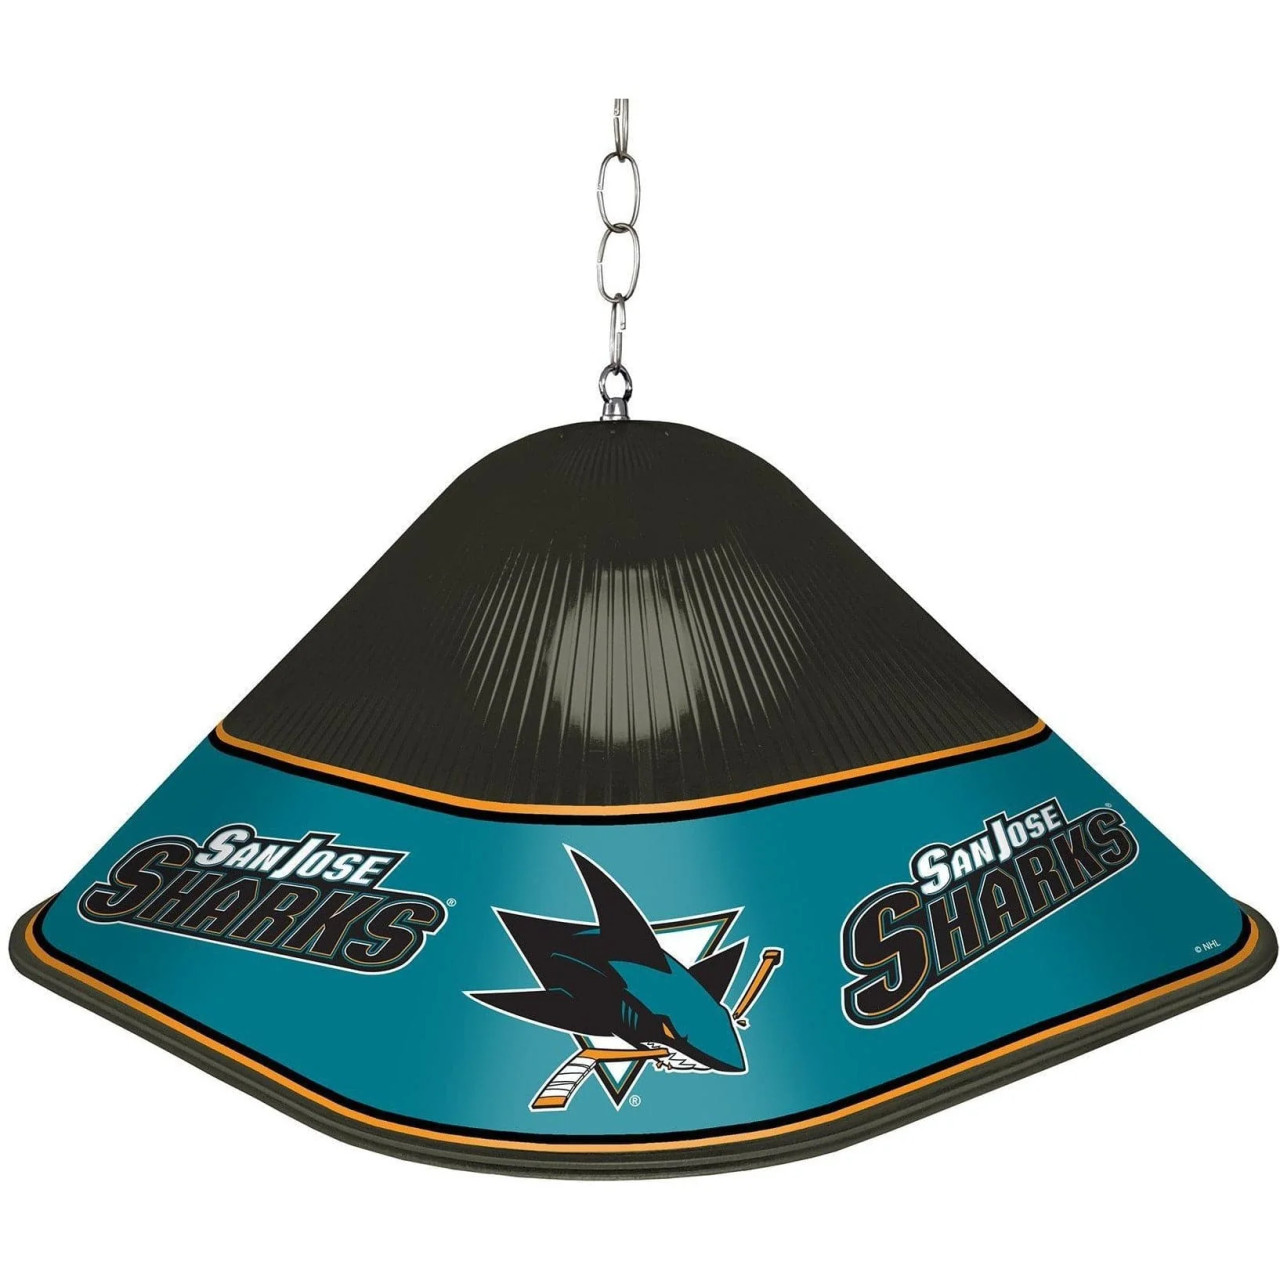 SJ, San Jose, Sharks, Game, Table, Light, Lamp, NHSJSK-410-01, The Fan-Brand, NHL, 686878993813